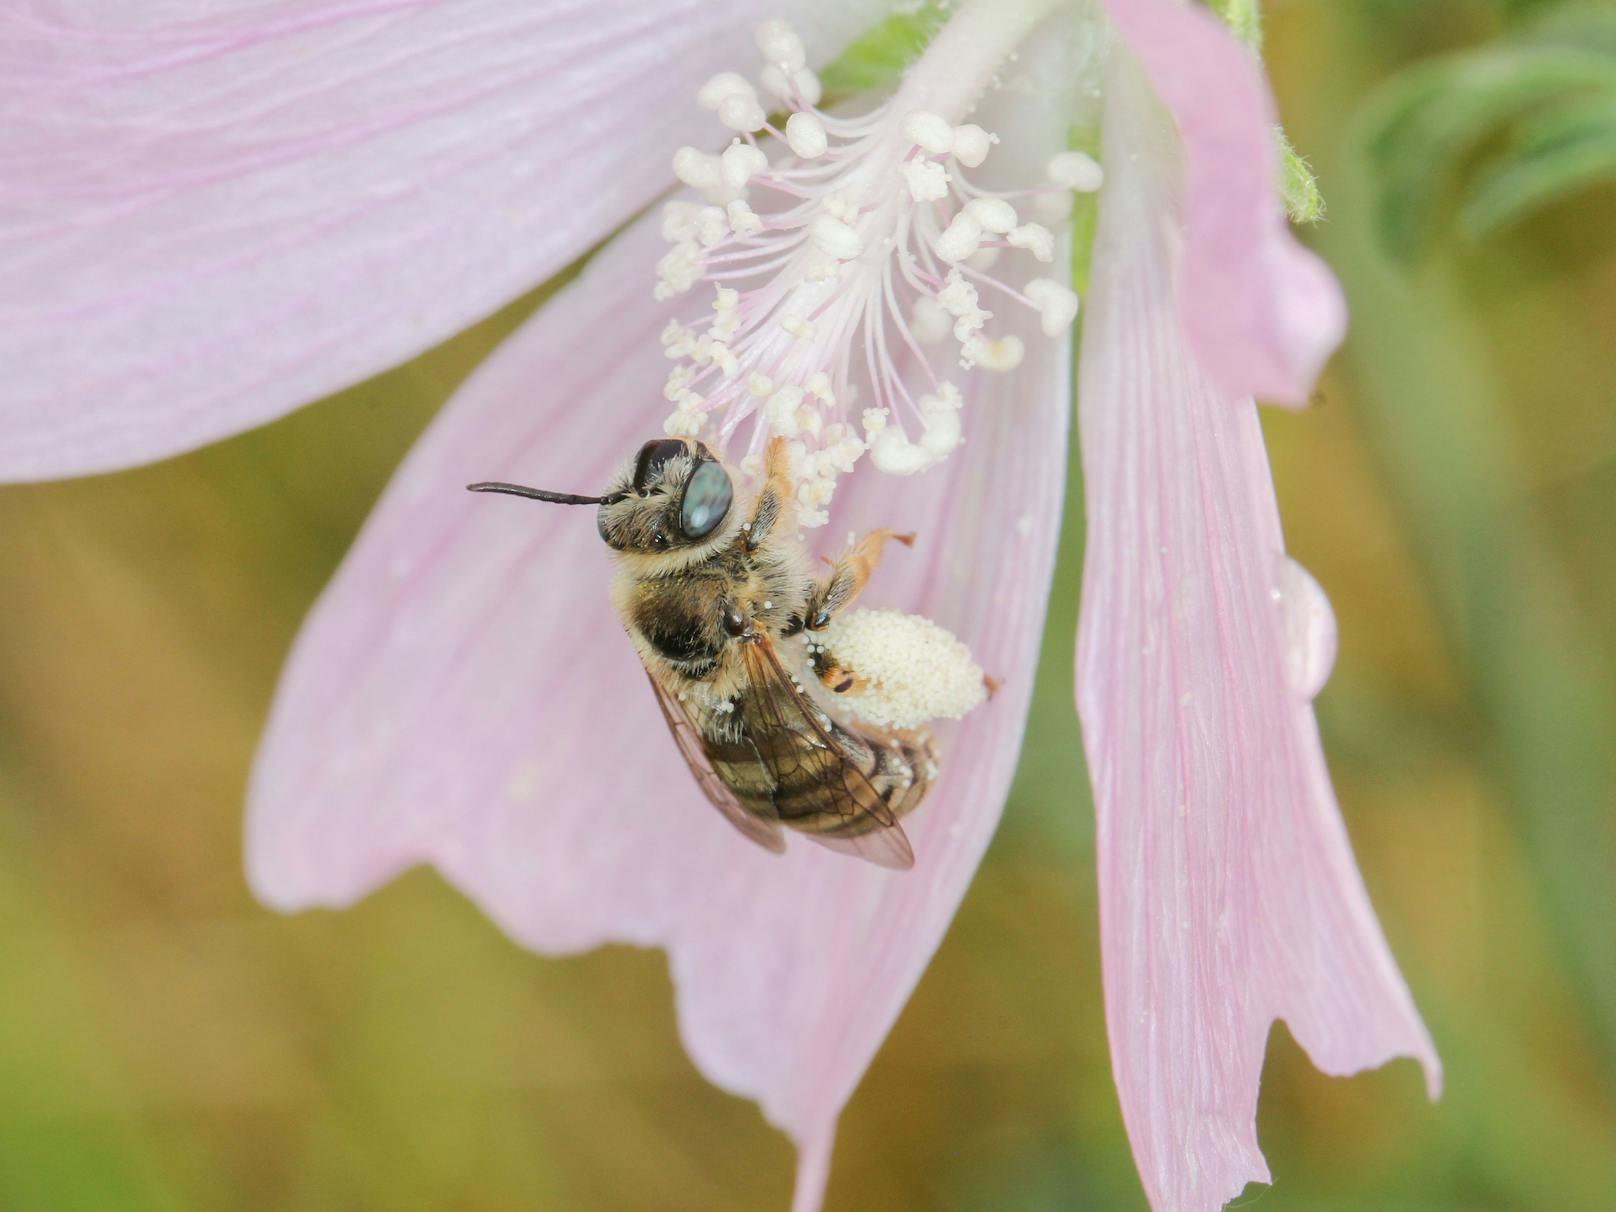 Vom Artenschwund ist auch die Malven-Langhornbiene betroffen. Seit mehr als 50 Jahren wurde sie im untersuchten Naturschutzgebiet nicht mehr gesichtet.